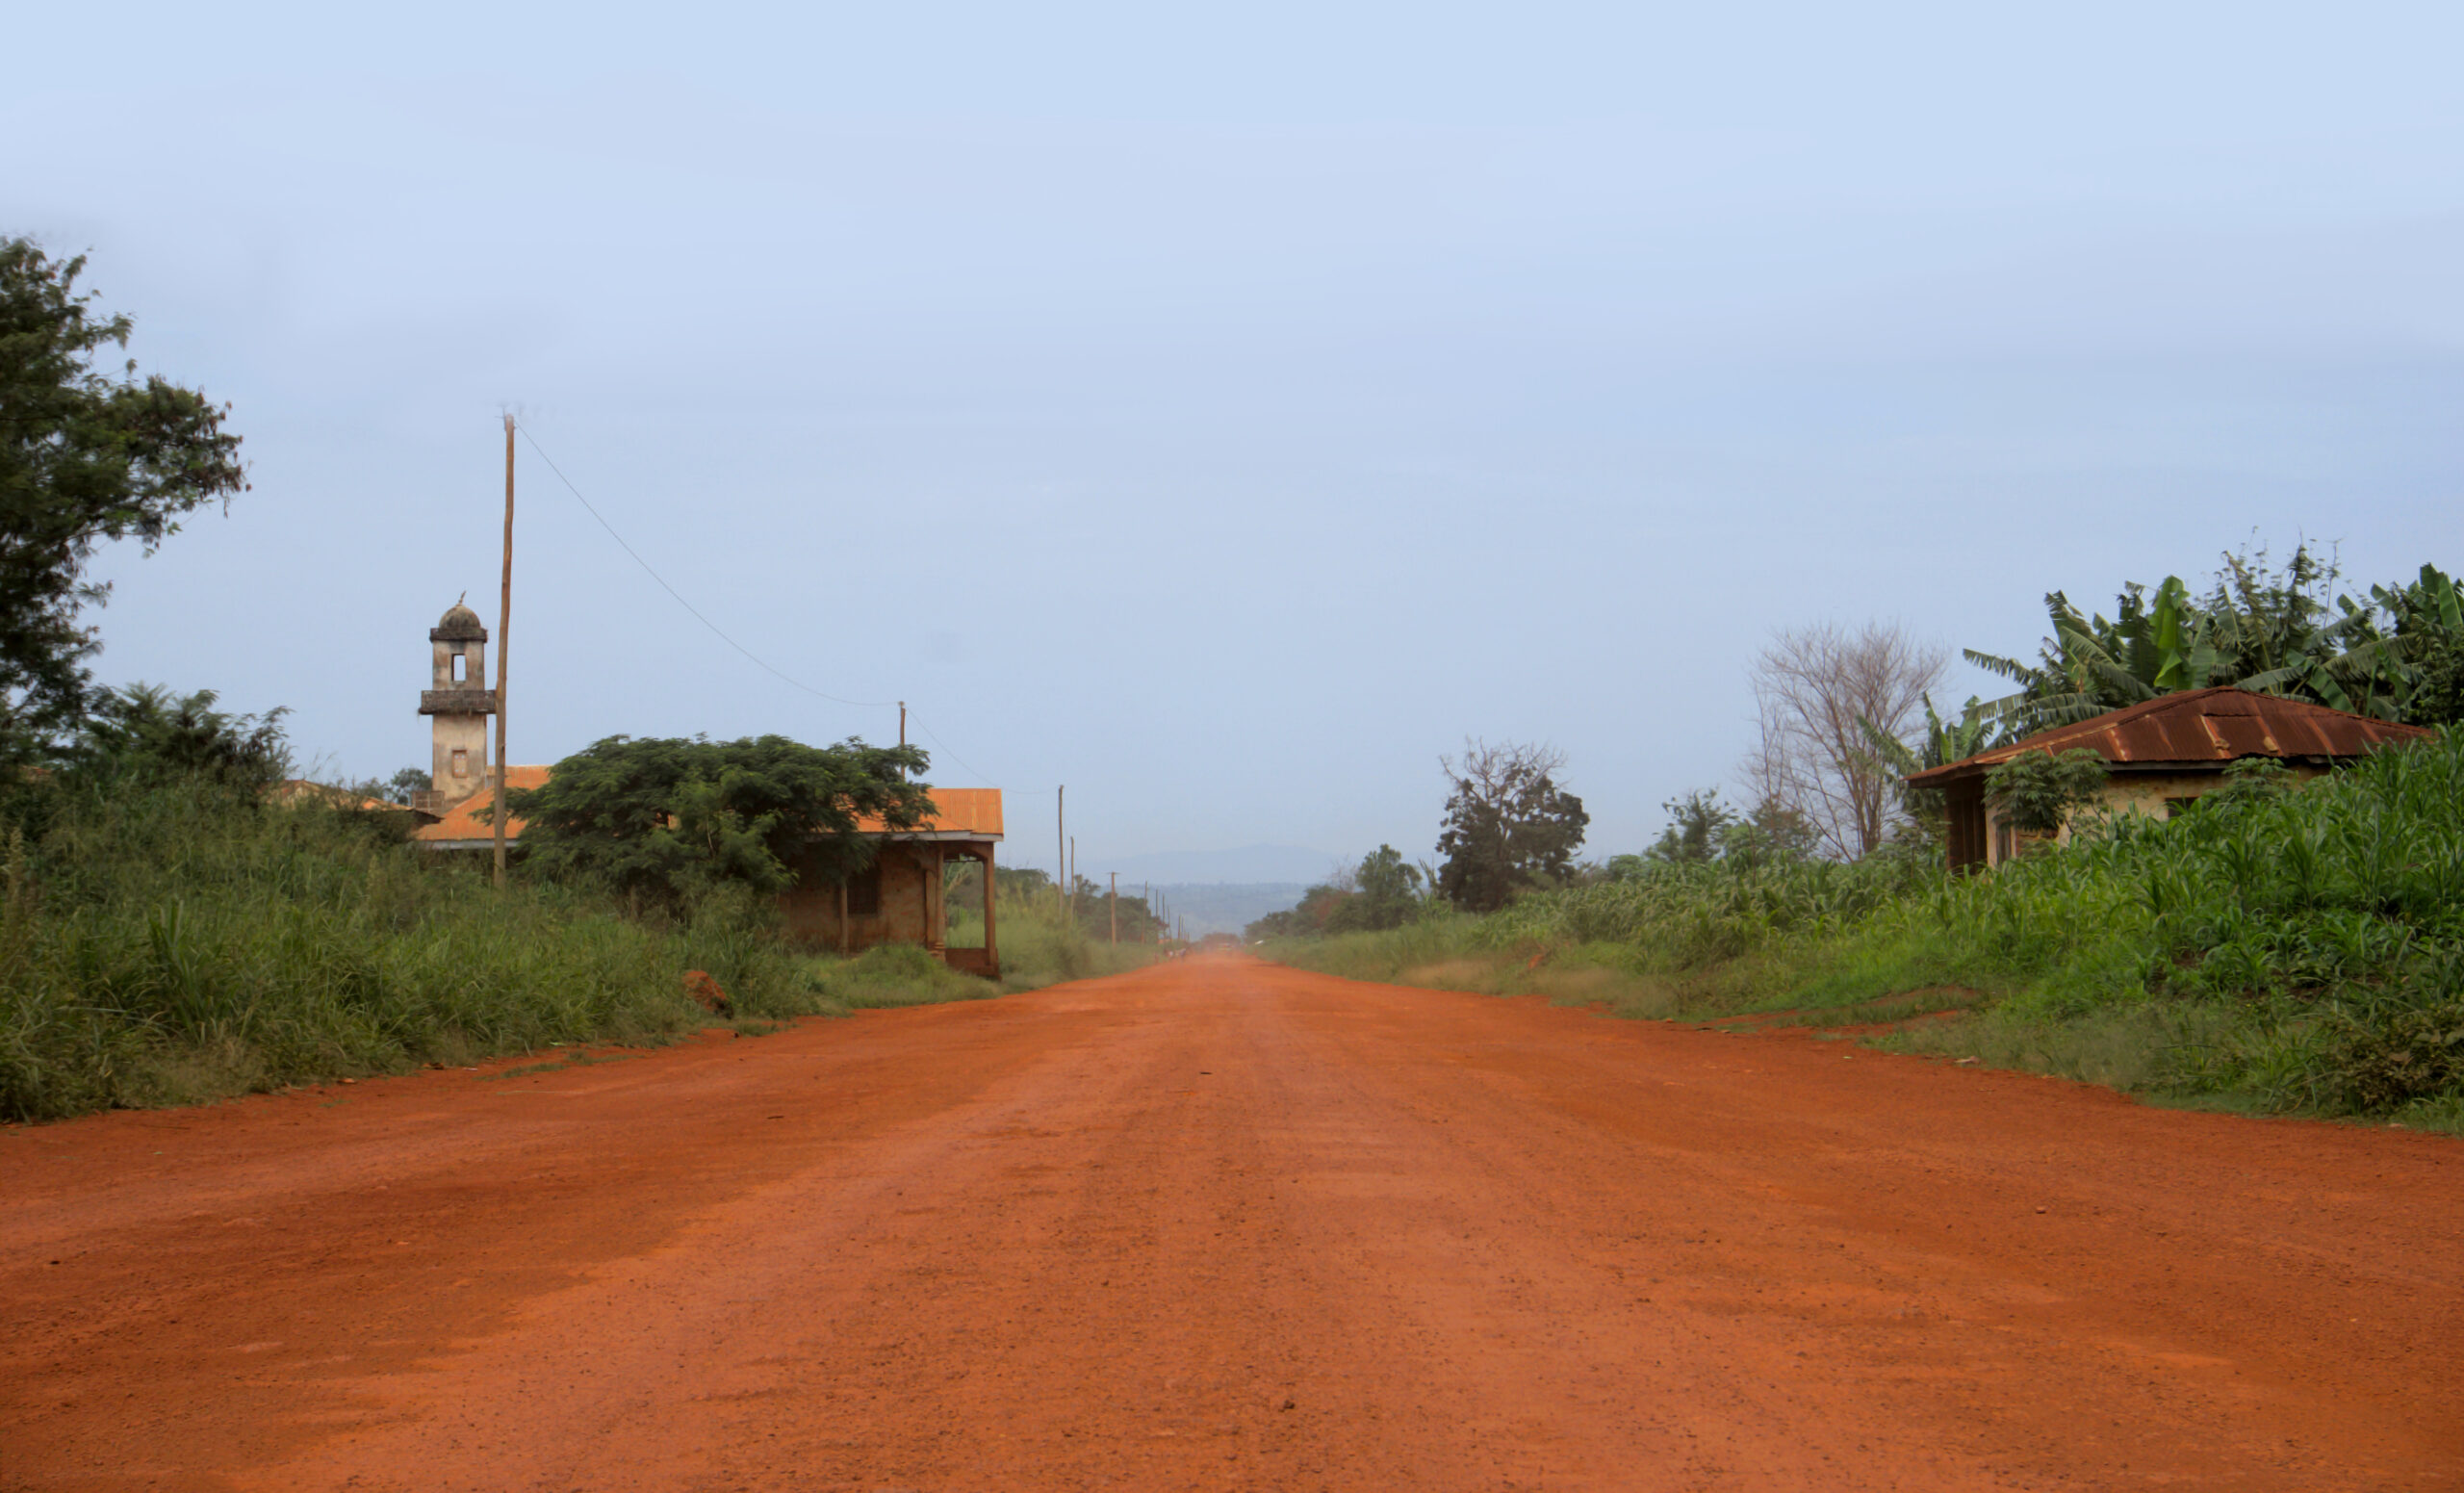 Principale route du département du Noun au Cameroun. Elle traverse le département du Sud au Nord et fût élargie pour faciliter le transport du café au cours du siècle passé. 